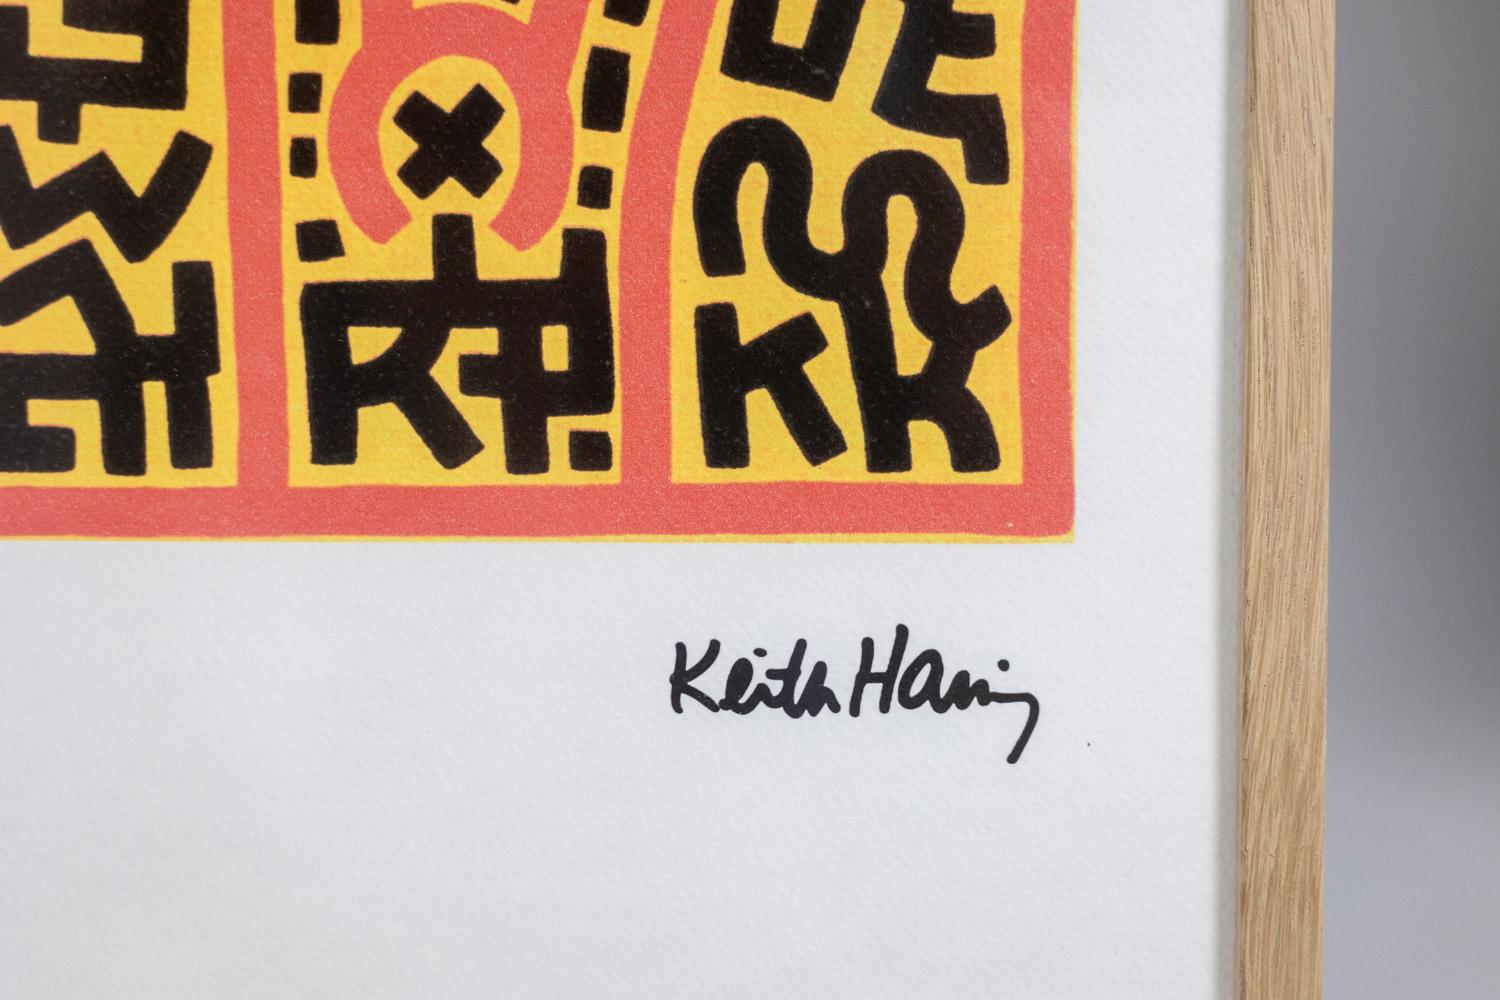 Keith Haring, signé et numéroté.

Sérigraphie abstraite d'un personnage dans les tons orange, jaune et noir dans un cadre en chêne blond.

Numéroté 91/150.

Œuvre américaine réalisée dans les années 1990.

Dimensions : L 50 x H 70 x P 2